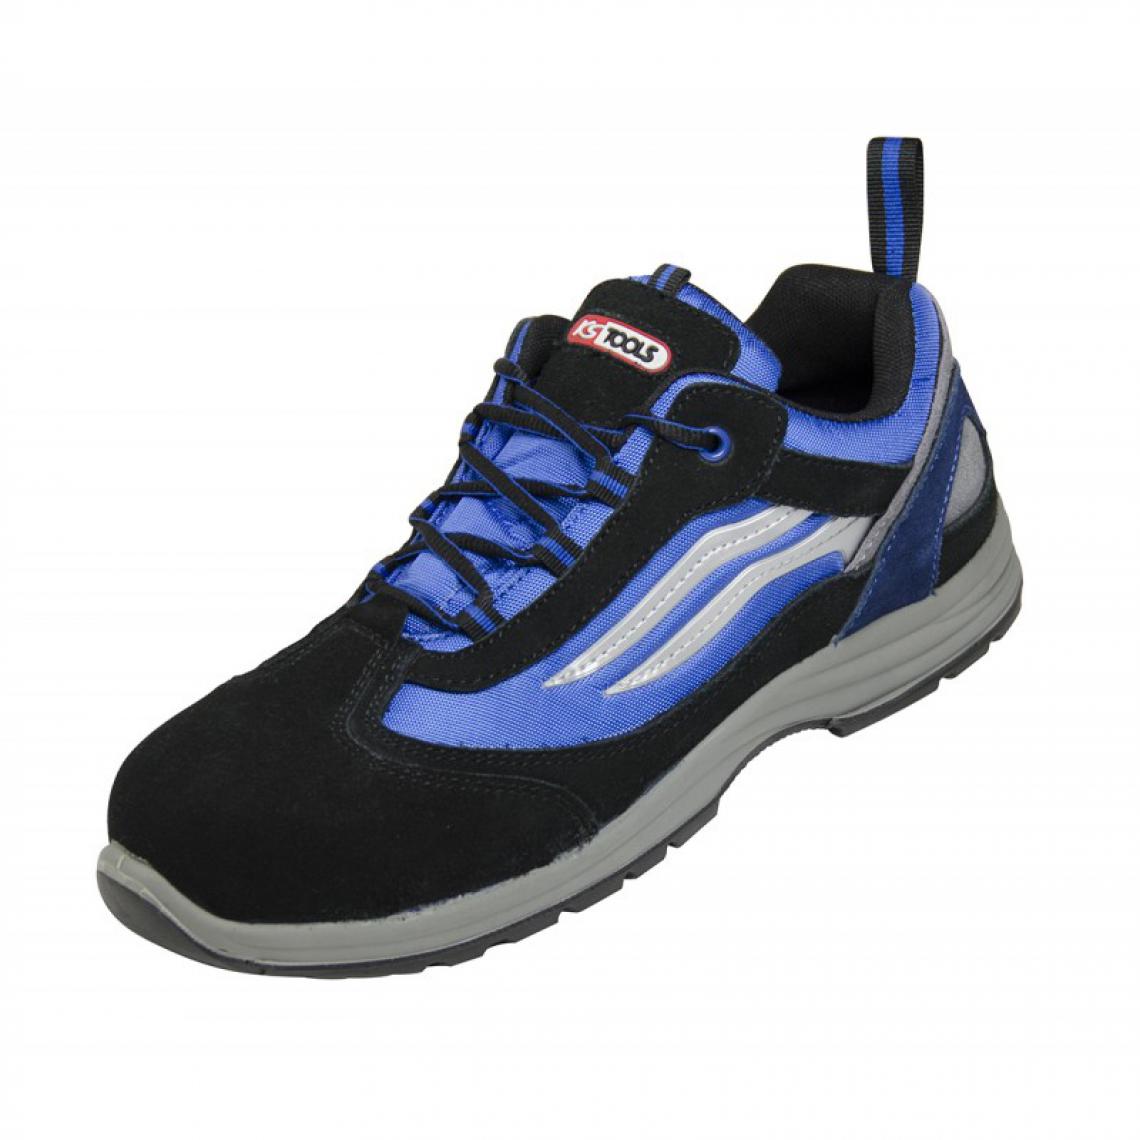 Kstools - Chaussures de sécurité KSTOOLS Couleur bleue et noire taille 42 - Equipement de Protection Individuelle